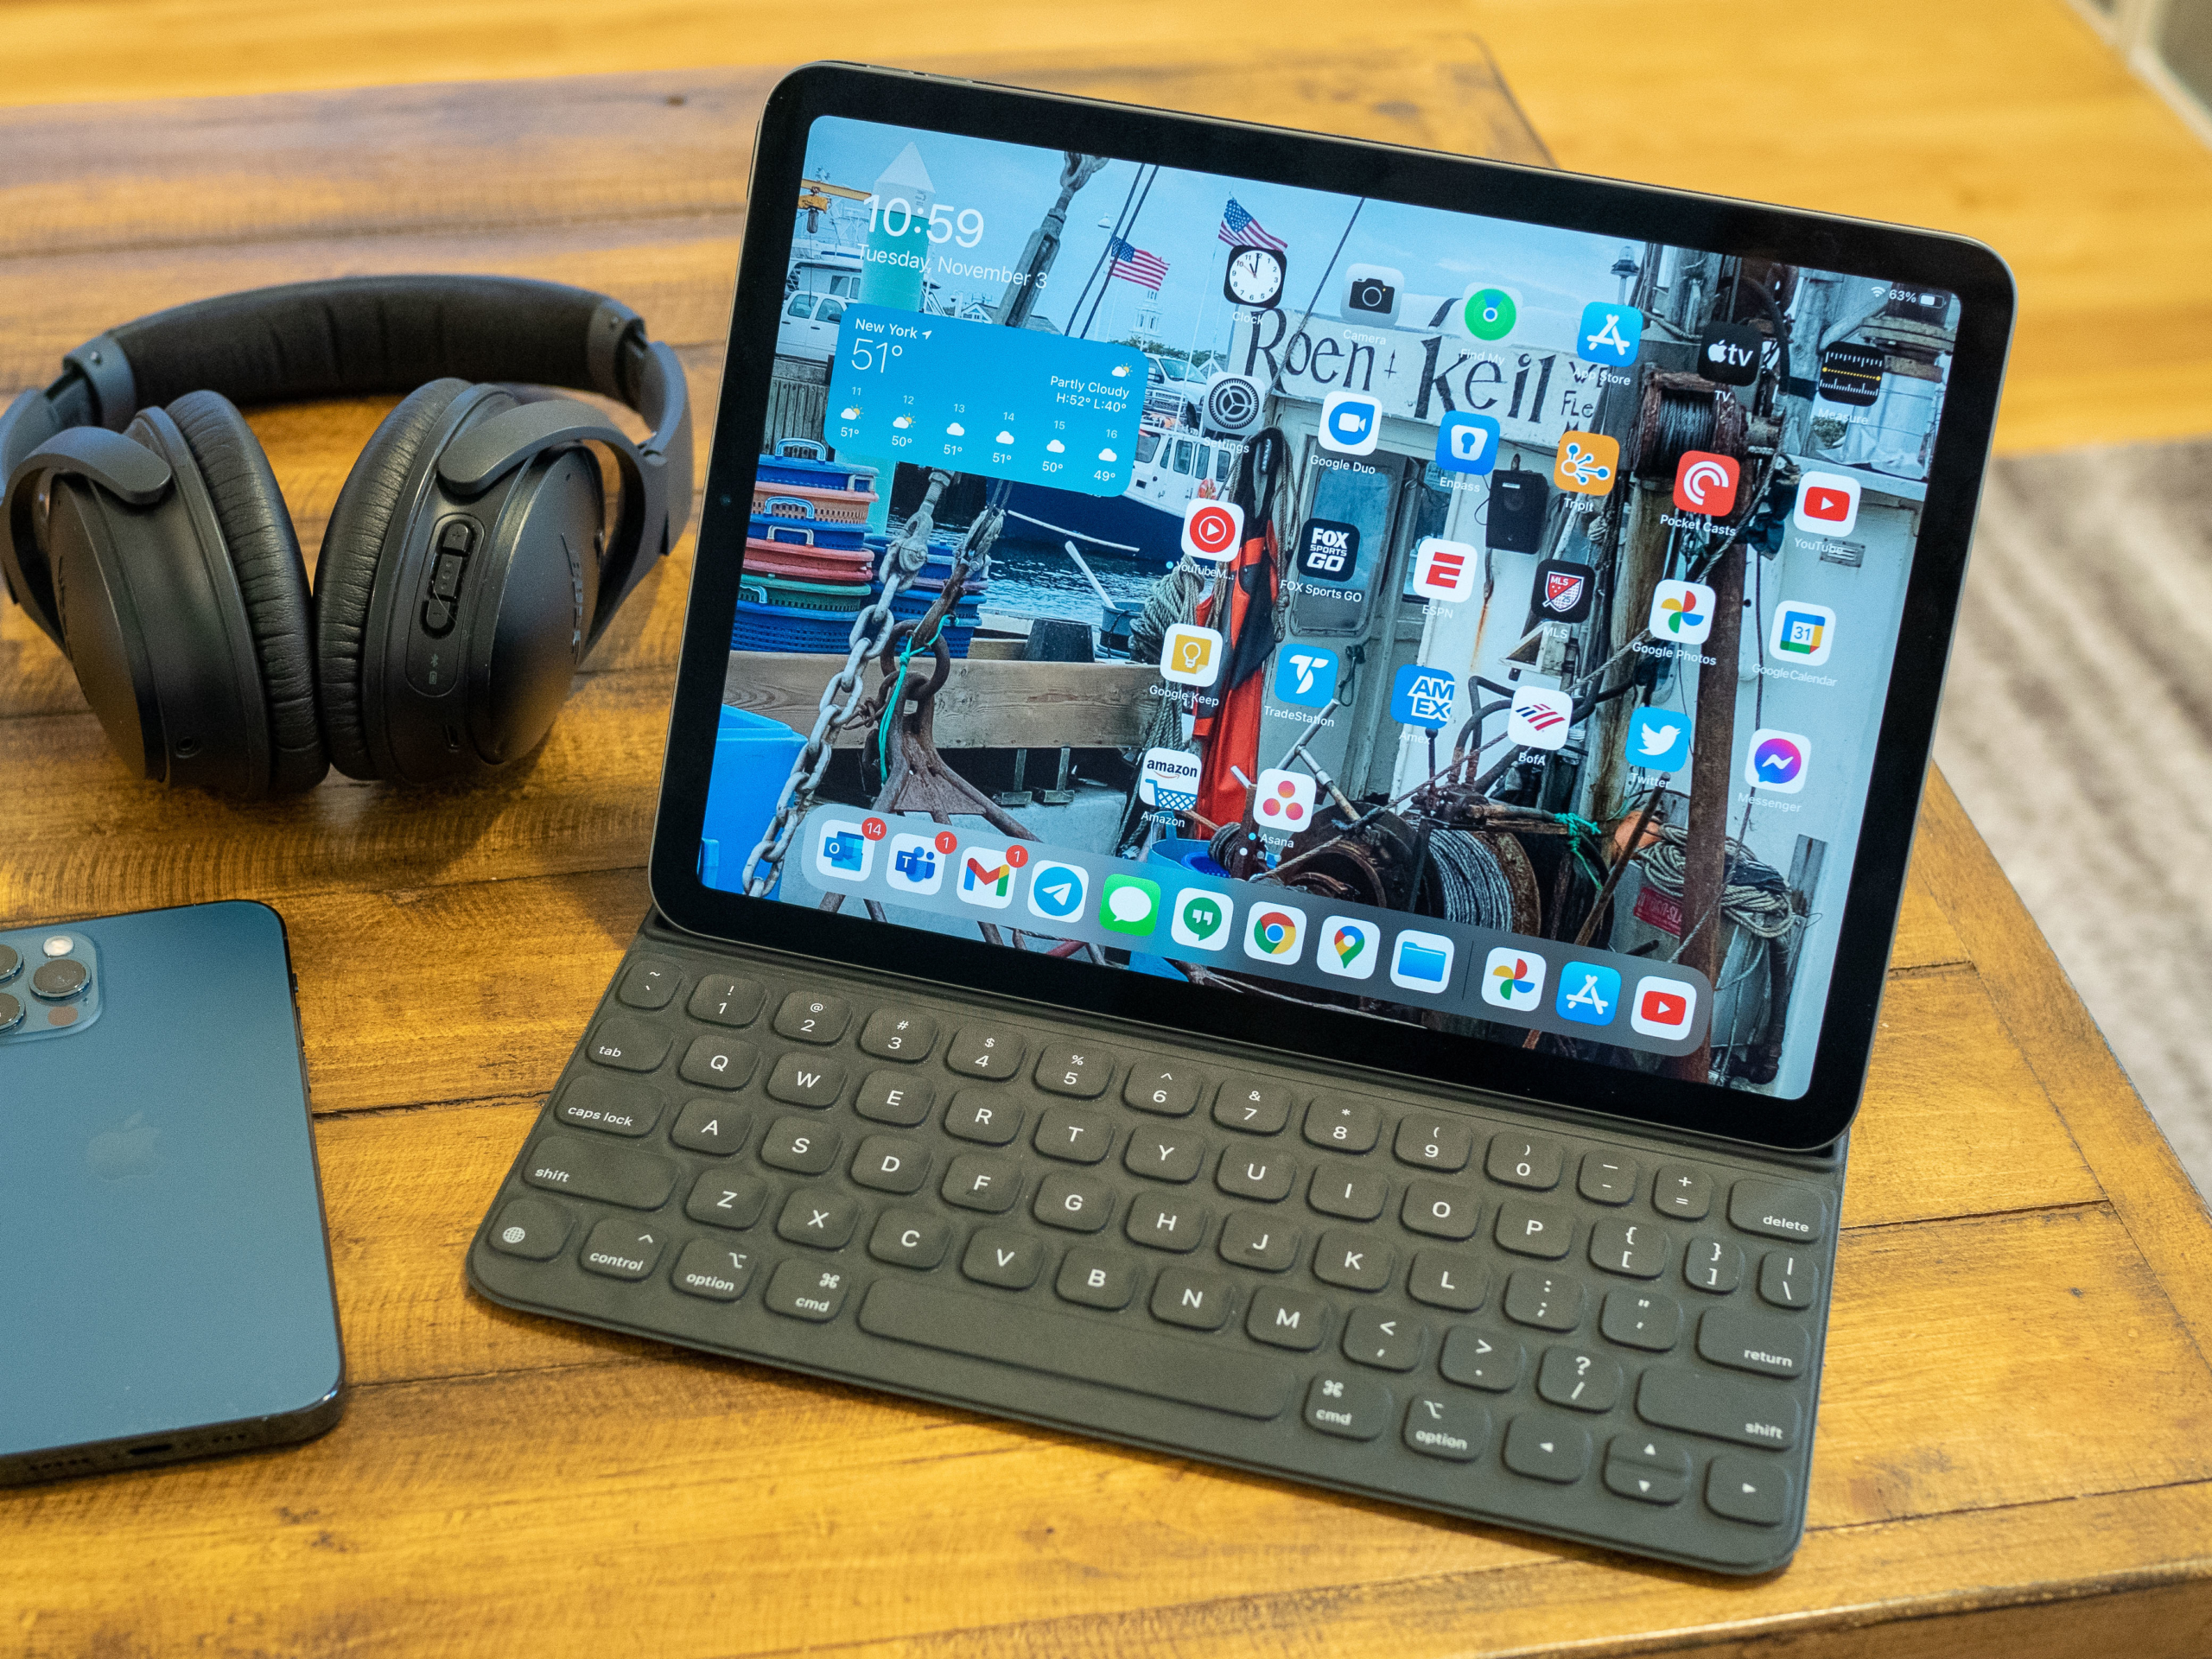 iPad 8 vs iPad Air 4: semejanzas y diferencias entre tablets